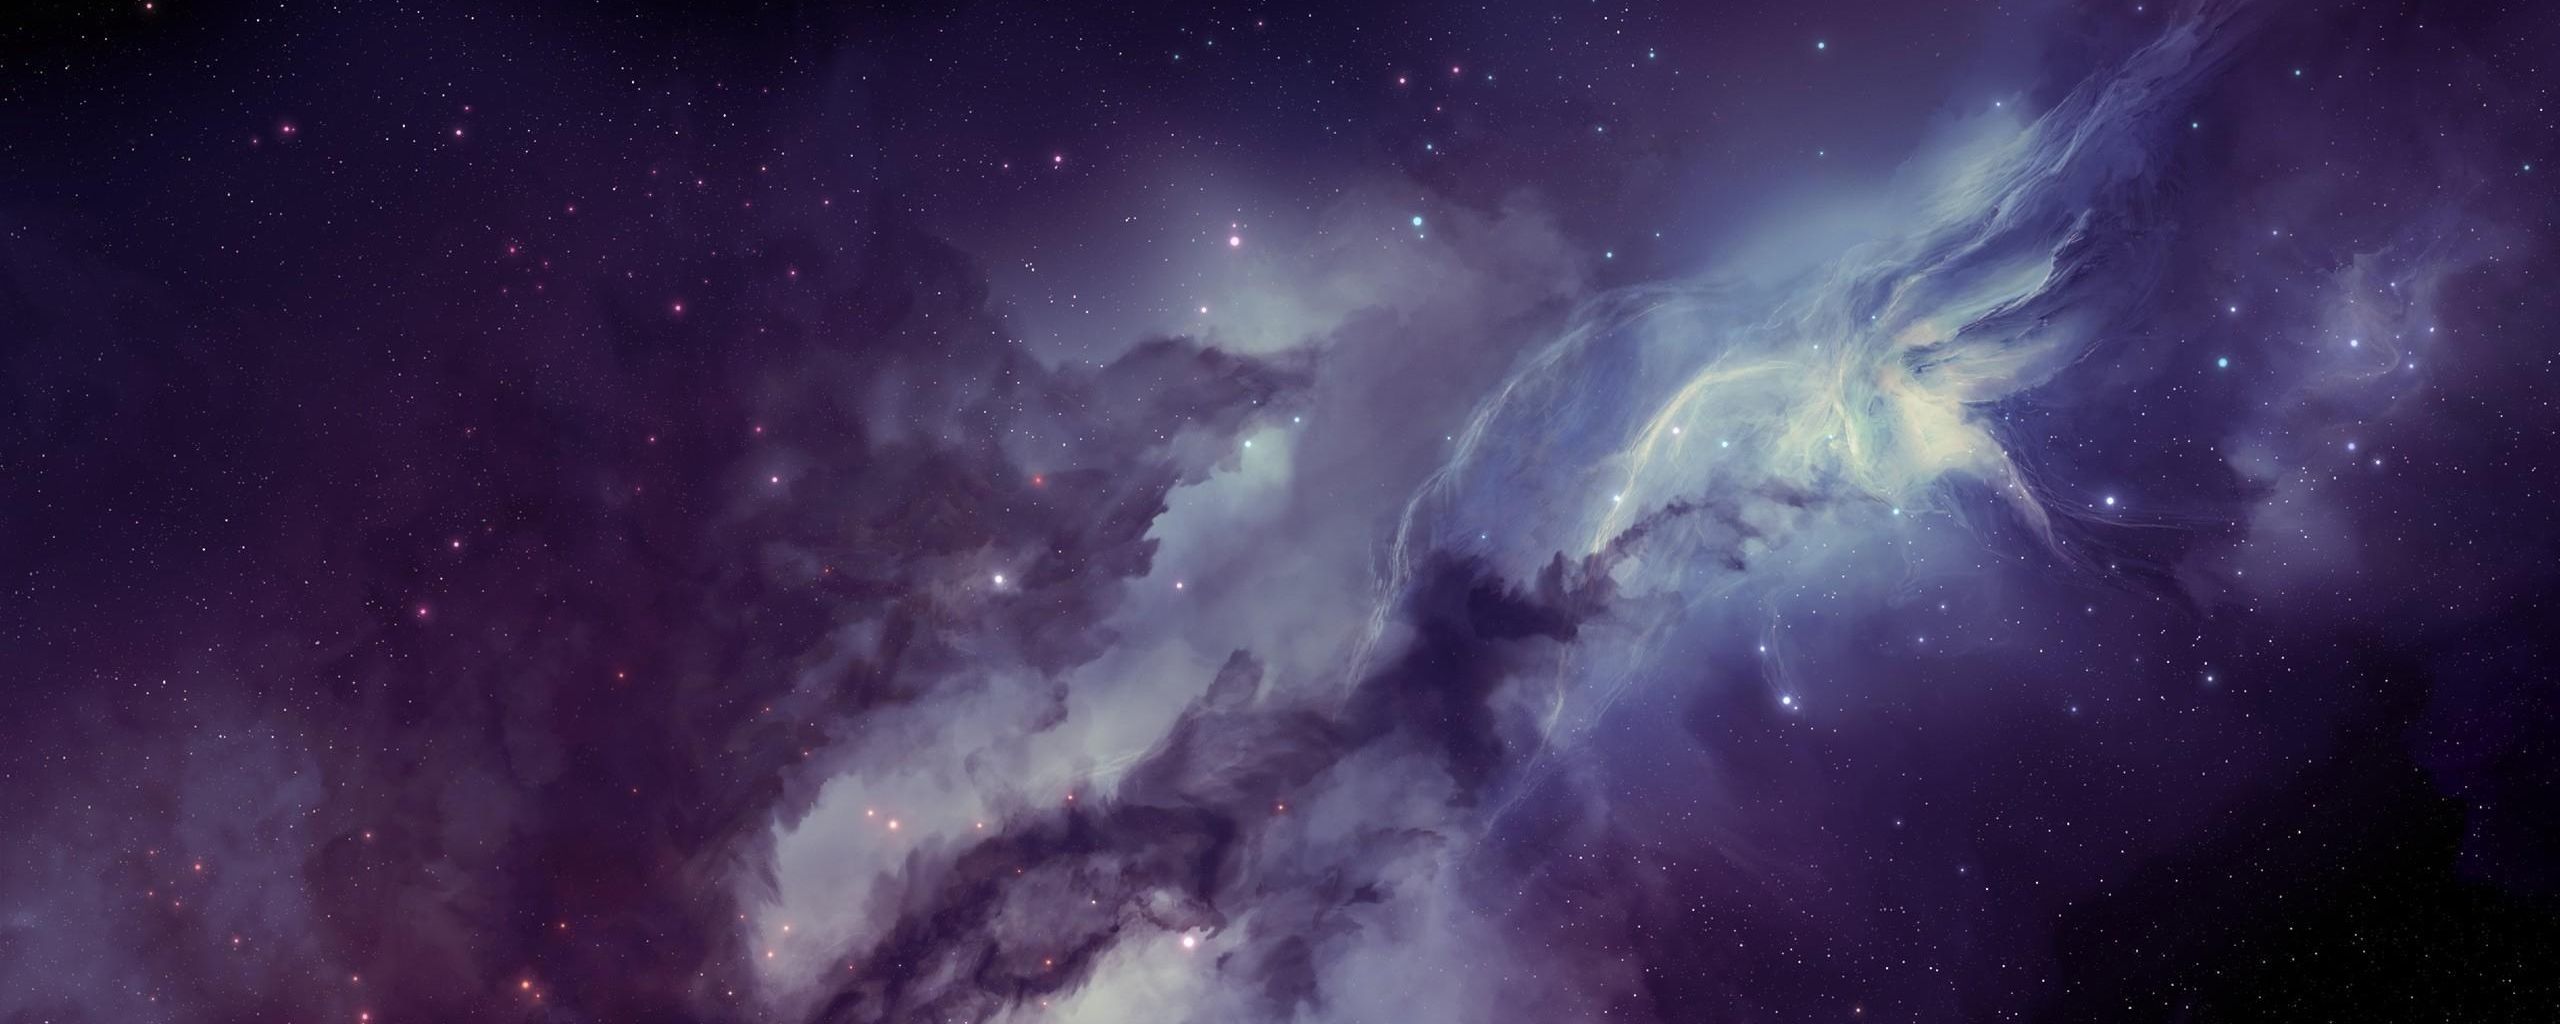 Carina Nebula CarinaSagittarius Arm Dual Monitor Wallpaper  Pixelzcc